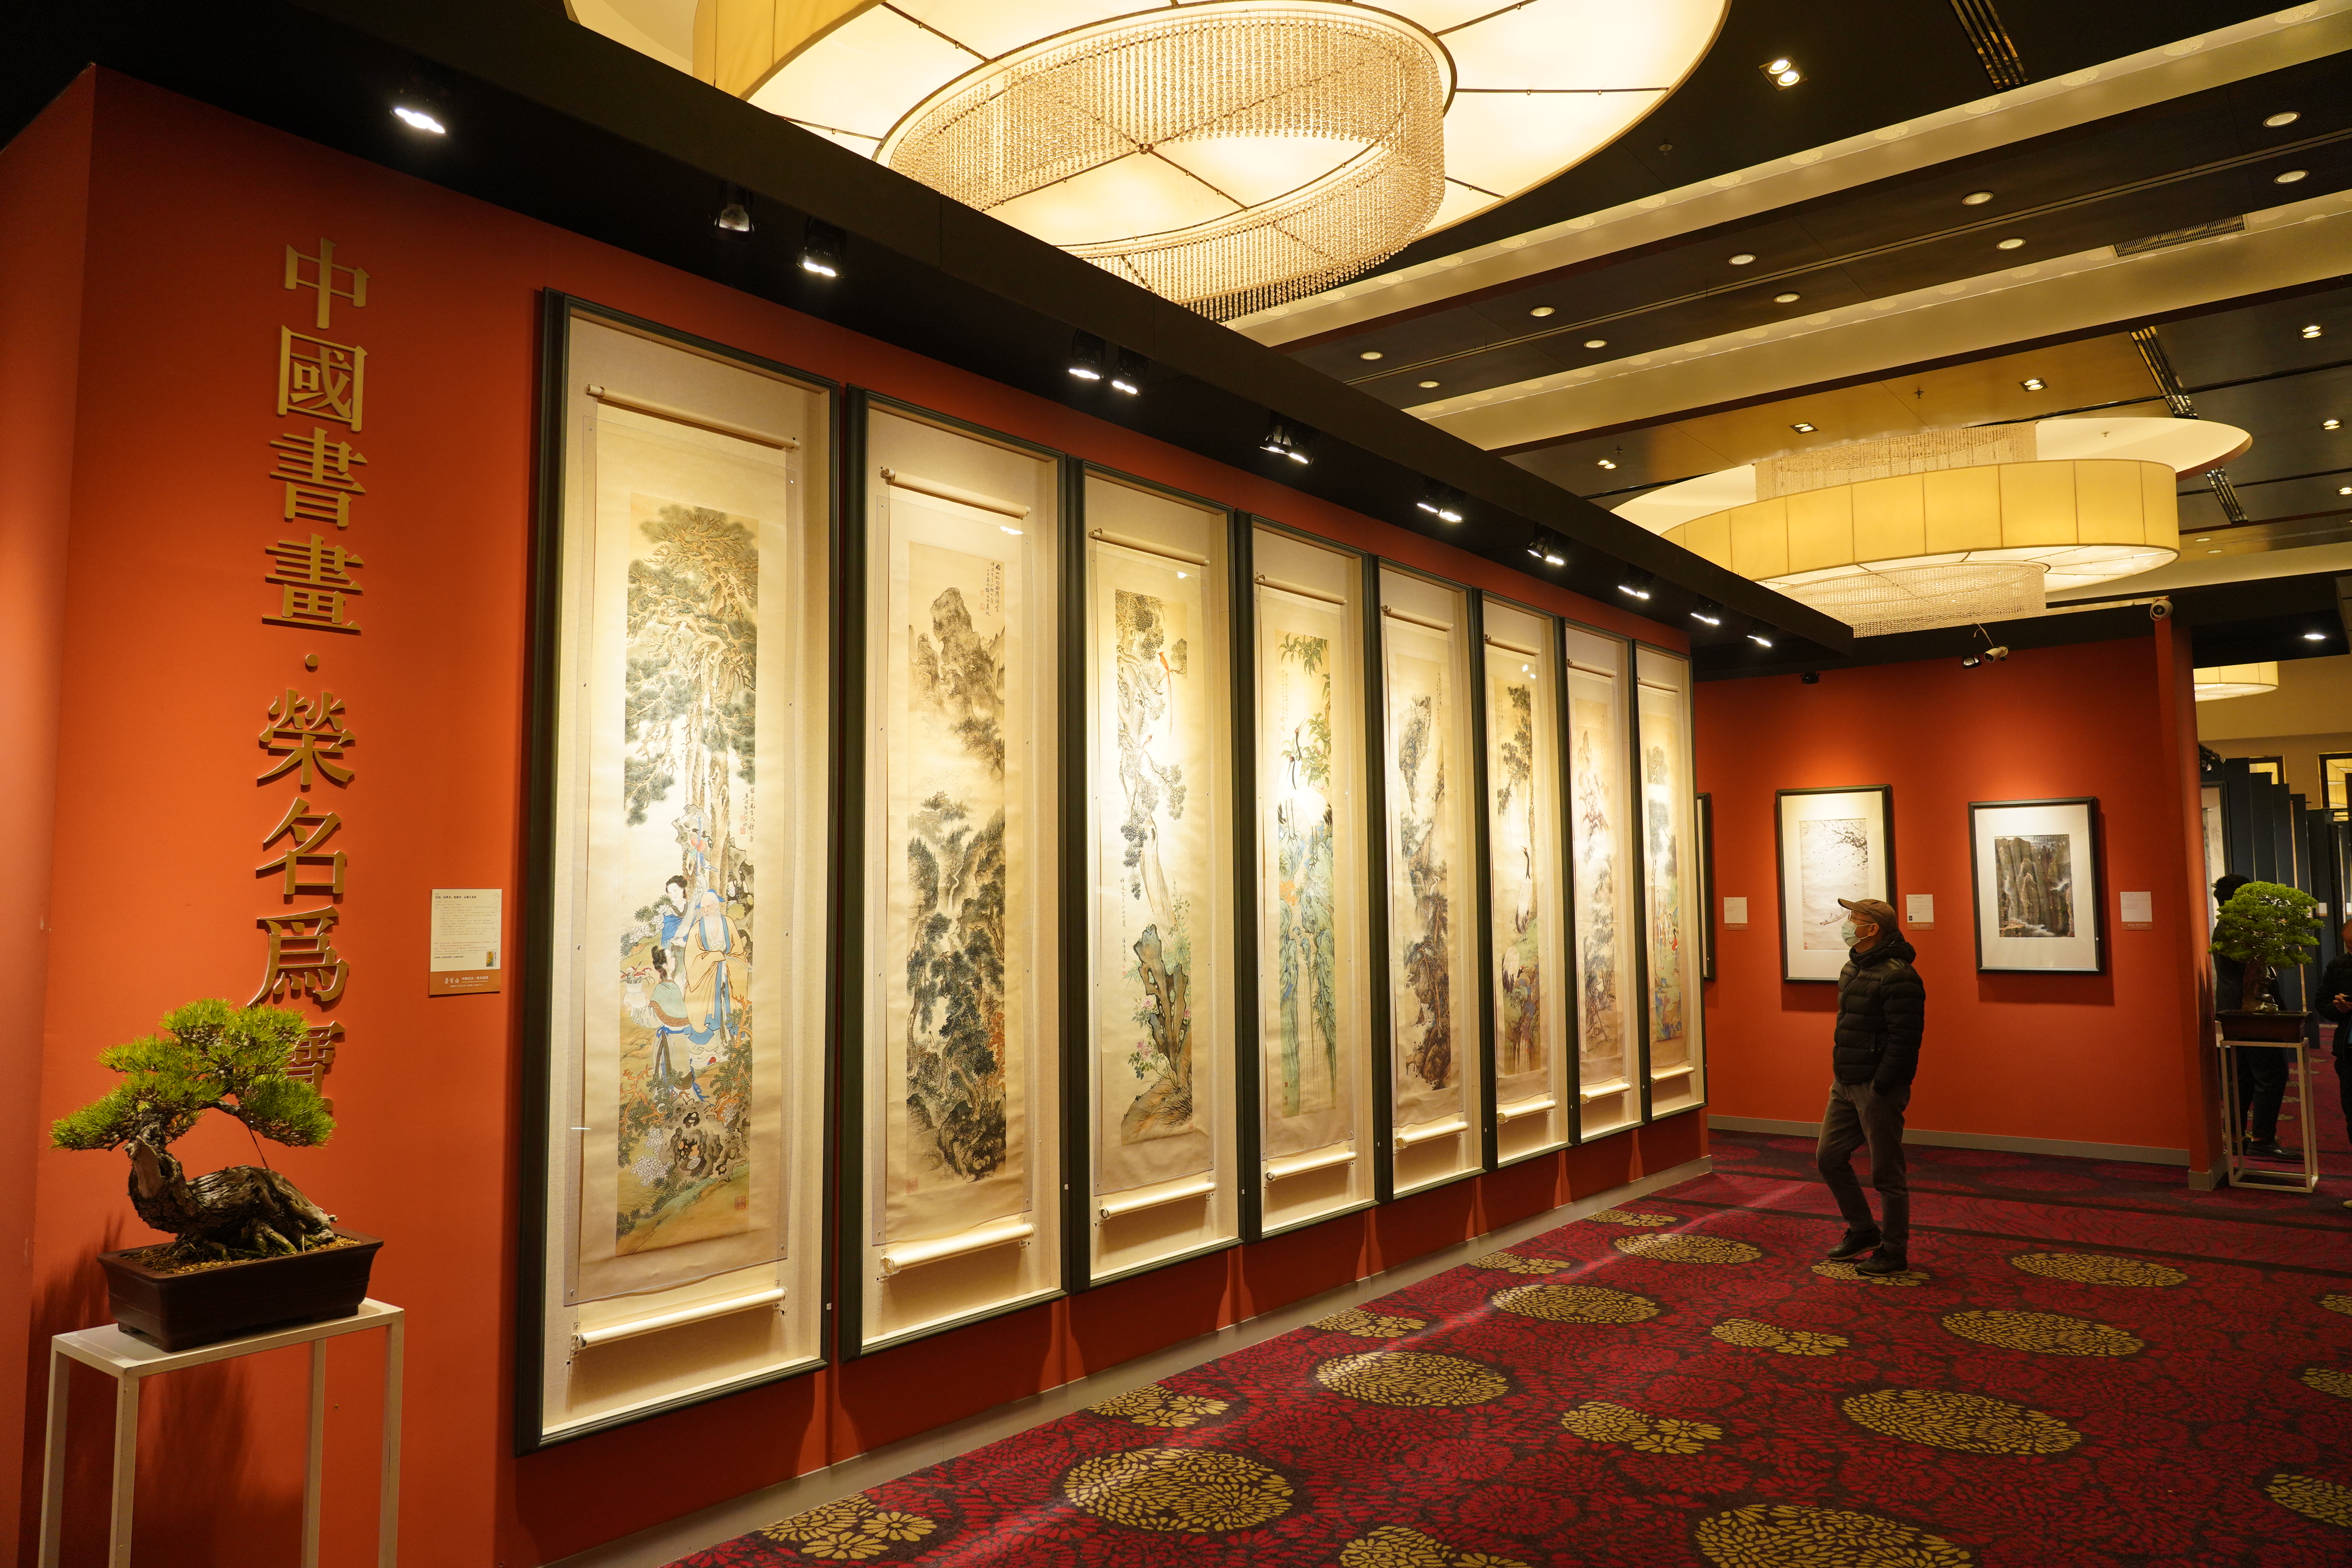 北京荣宝2021秋季艺术品拍卖会于今日在北京富力万丽酒店开启预展